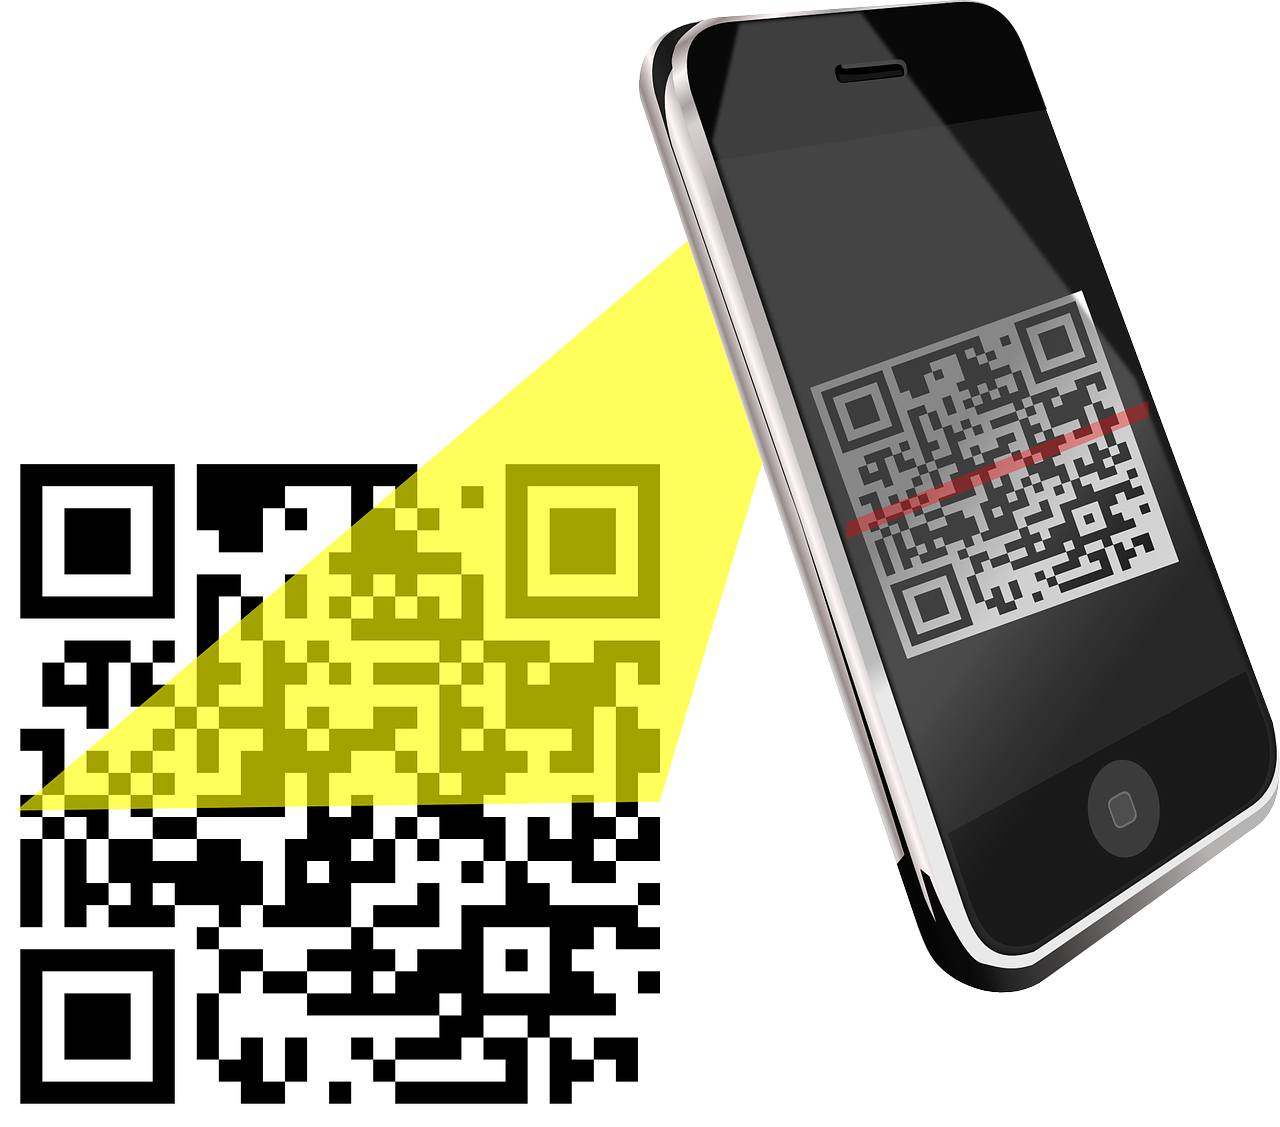 QR код. Смартфон QR код. Сканировать QR код. Иллюстрация смартфона с QR кодом.